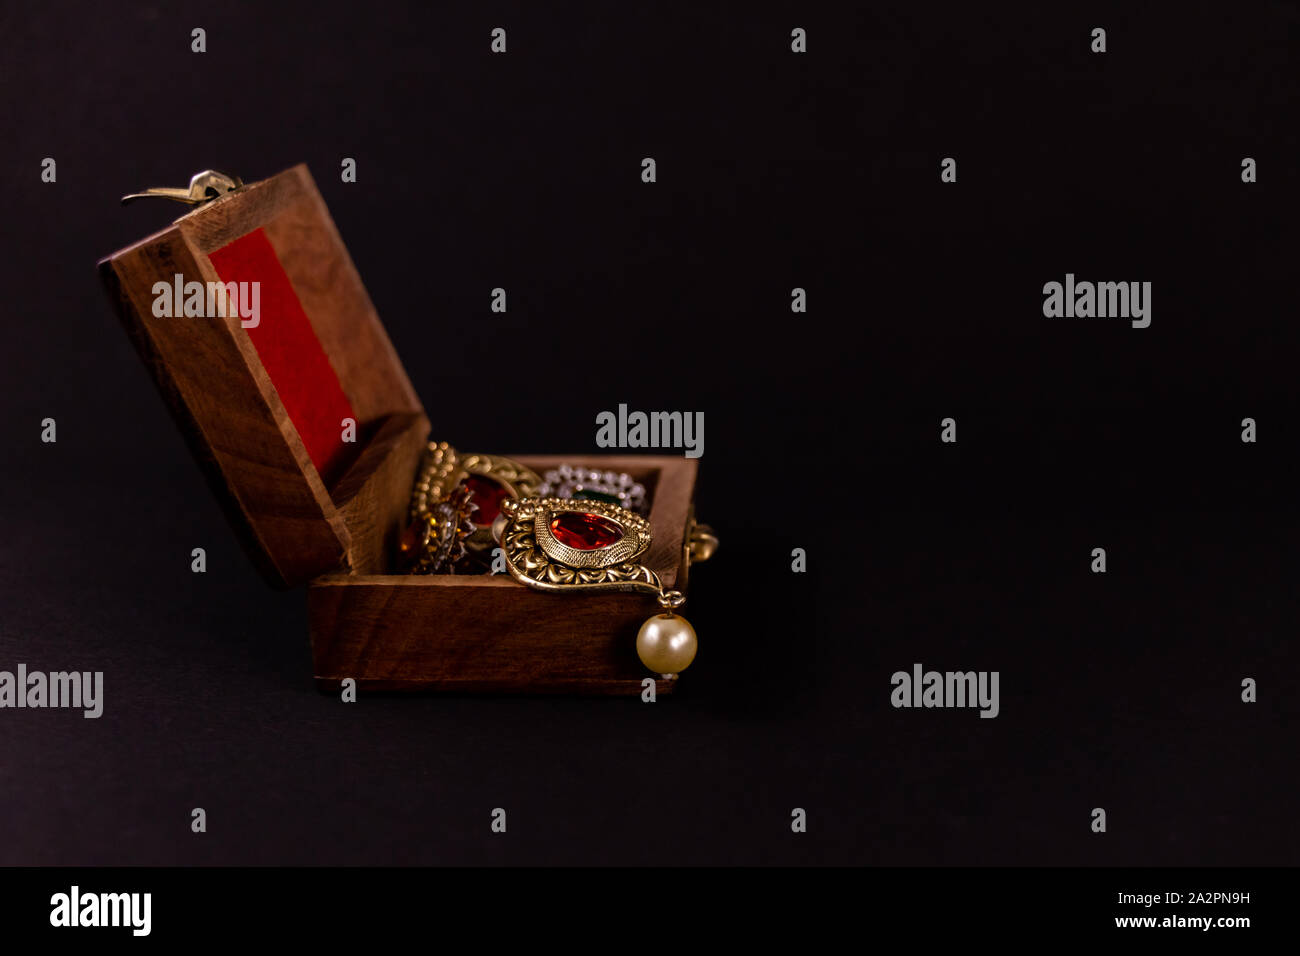 Satz von Golden Earing in Holz- Geschenkbox auf dunklem Hintergrund. Traditionelle Earing Geschenk Konzept Stockfoto